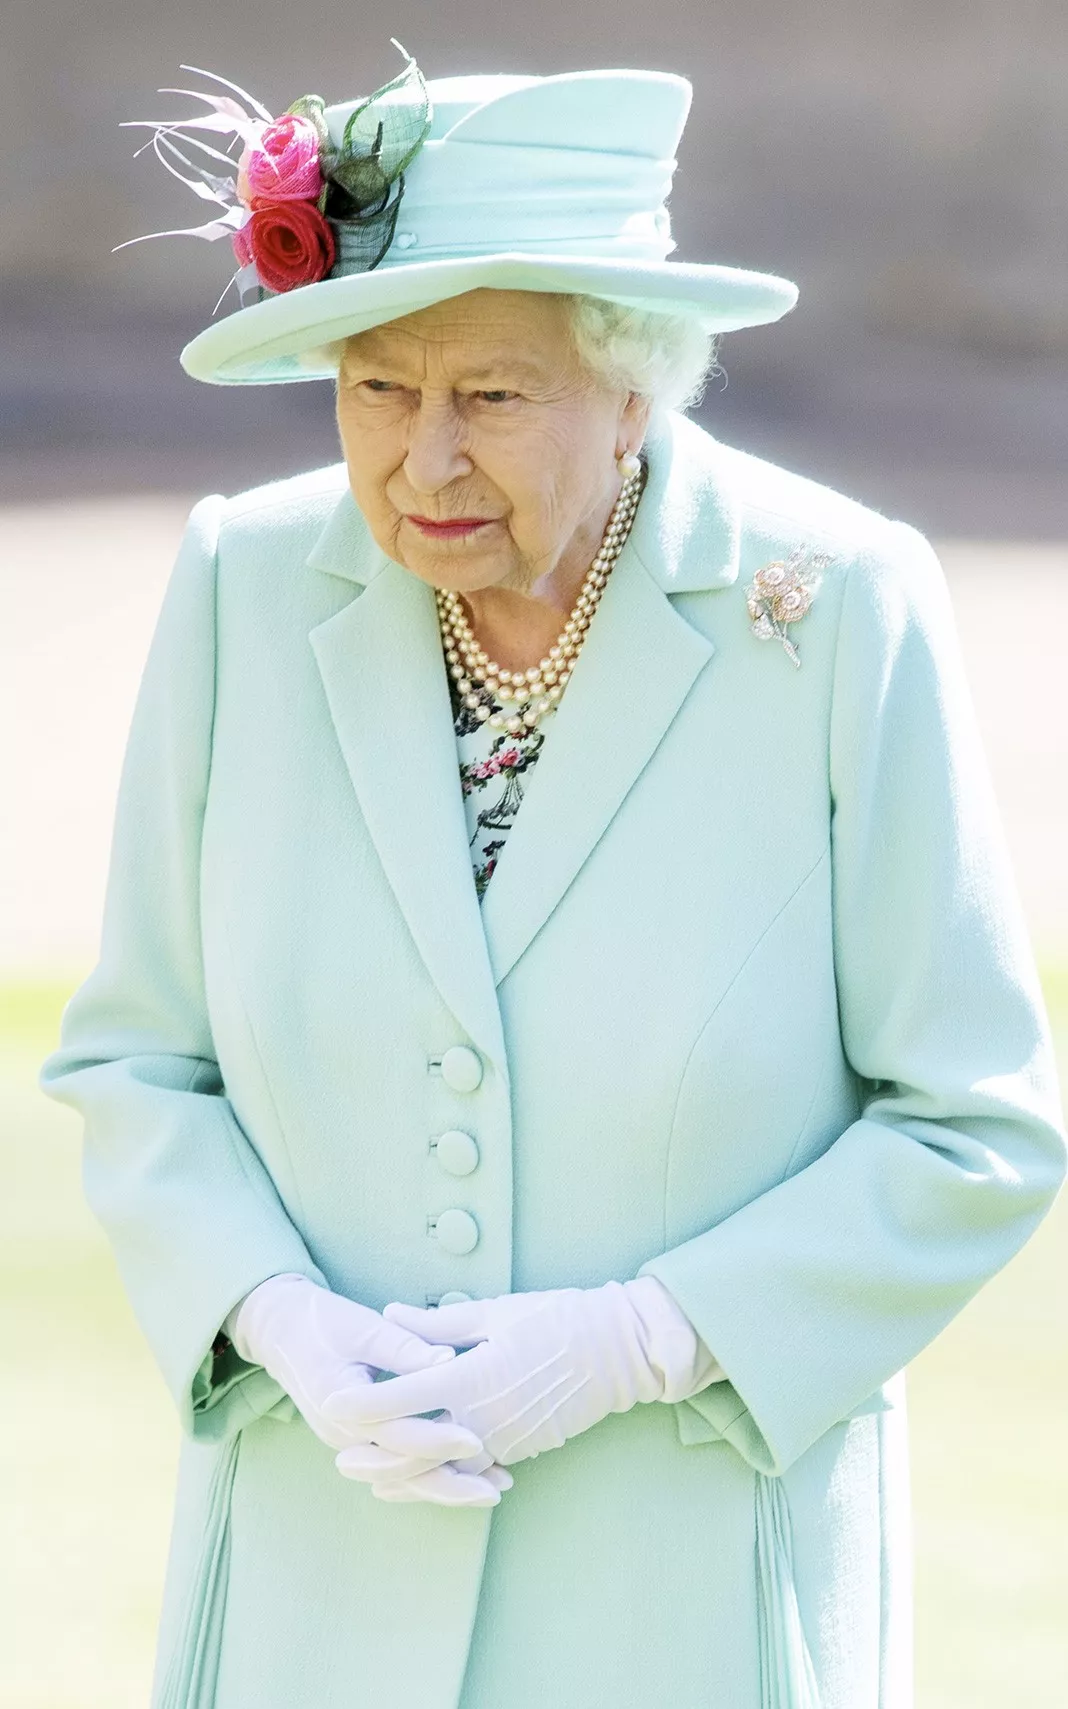 Королева Елизавета II на церемонии посвящения капитана Тома Мура в рыцари, Виндзорский замок, 17 июля 2020 г.